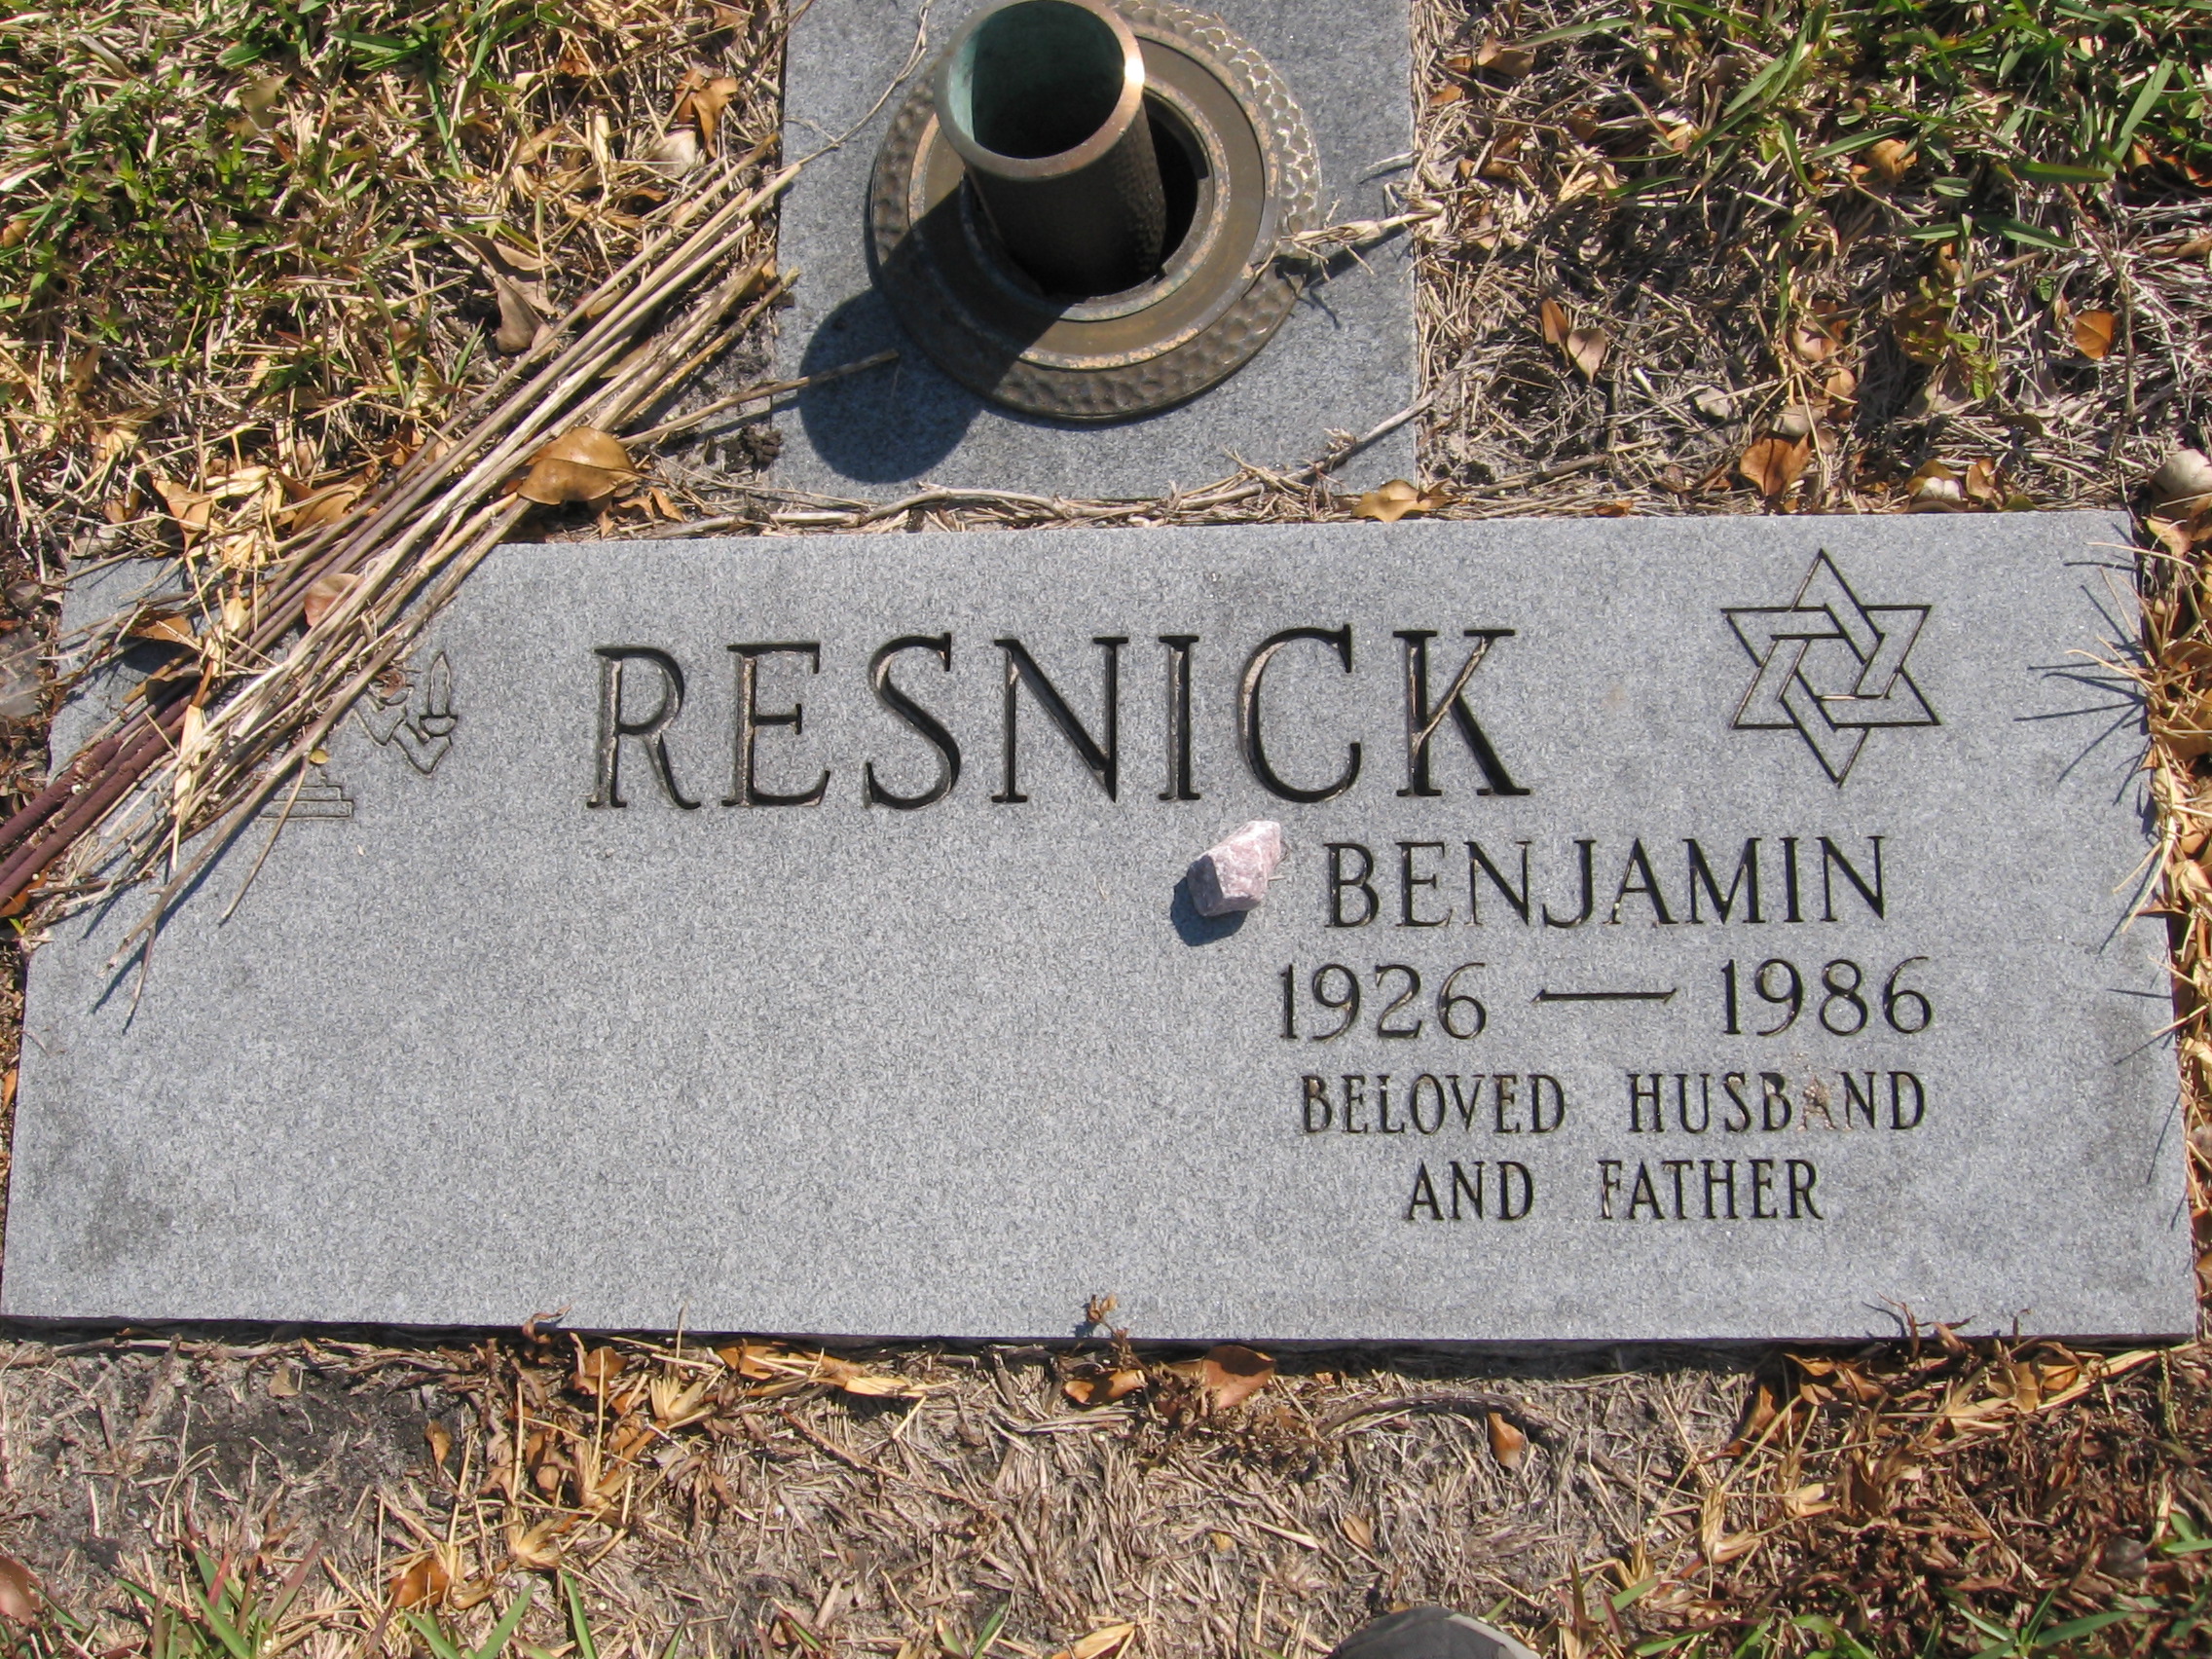 Benjamin Resnick